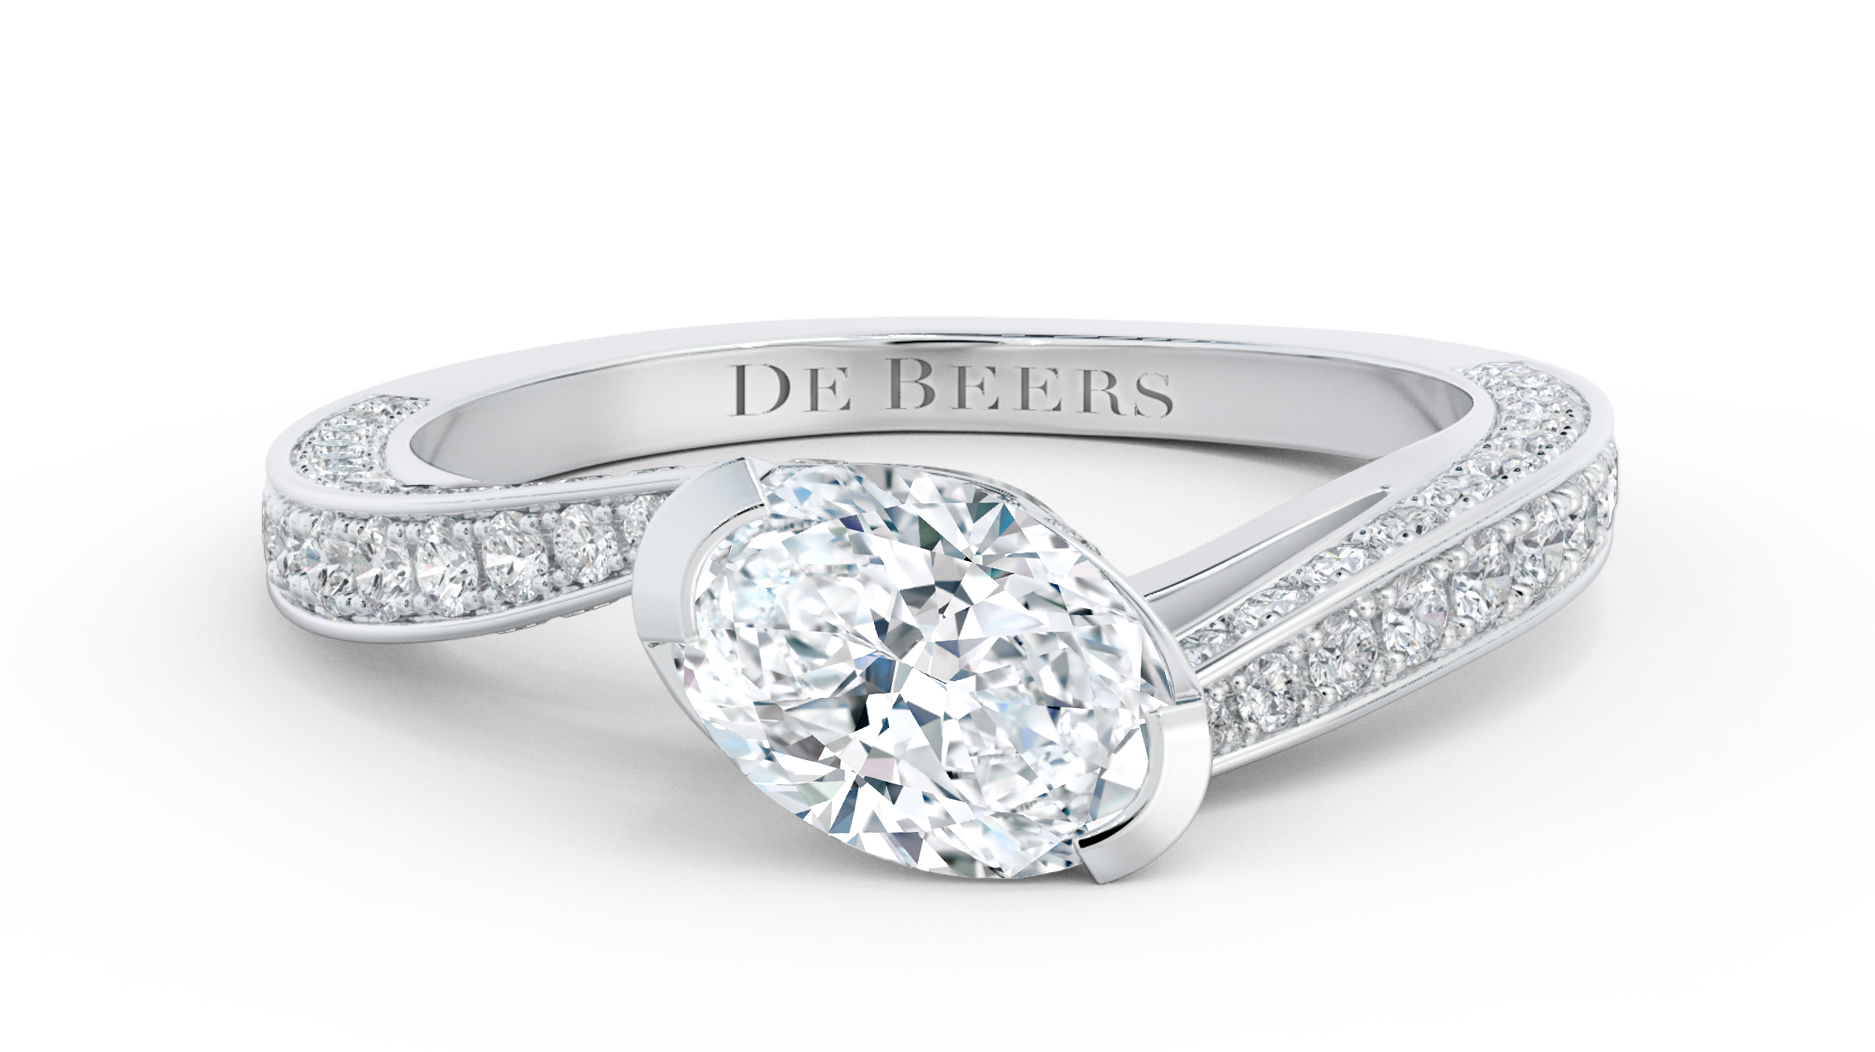 UK Jewellery Awards - De Beers Institute of Diamonds